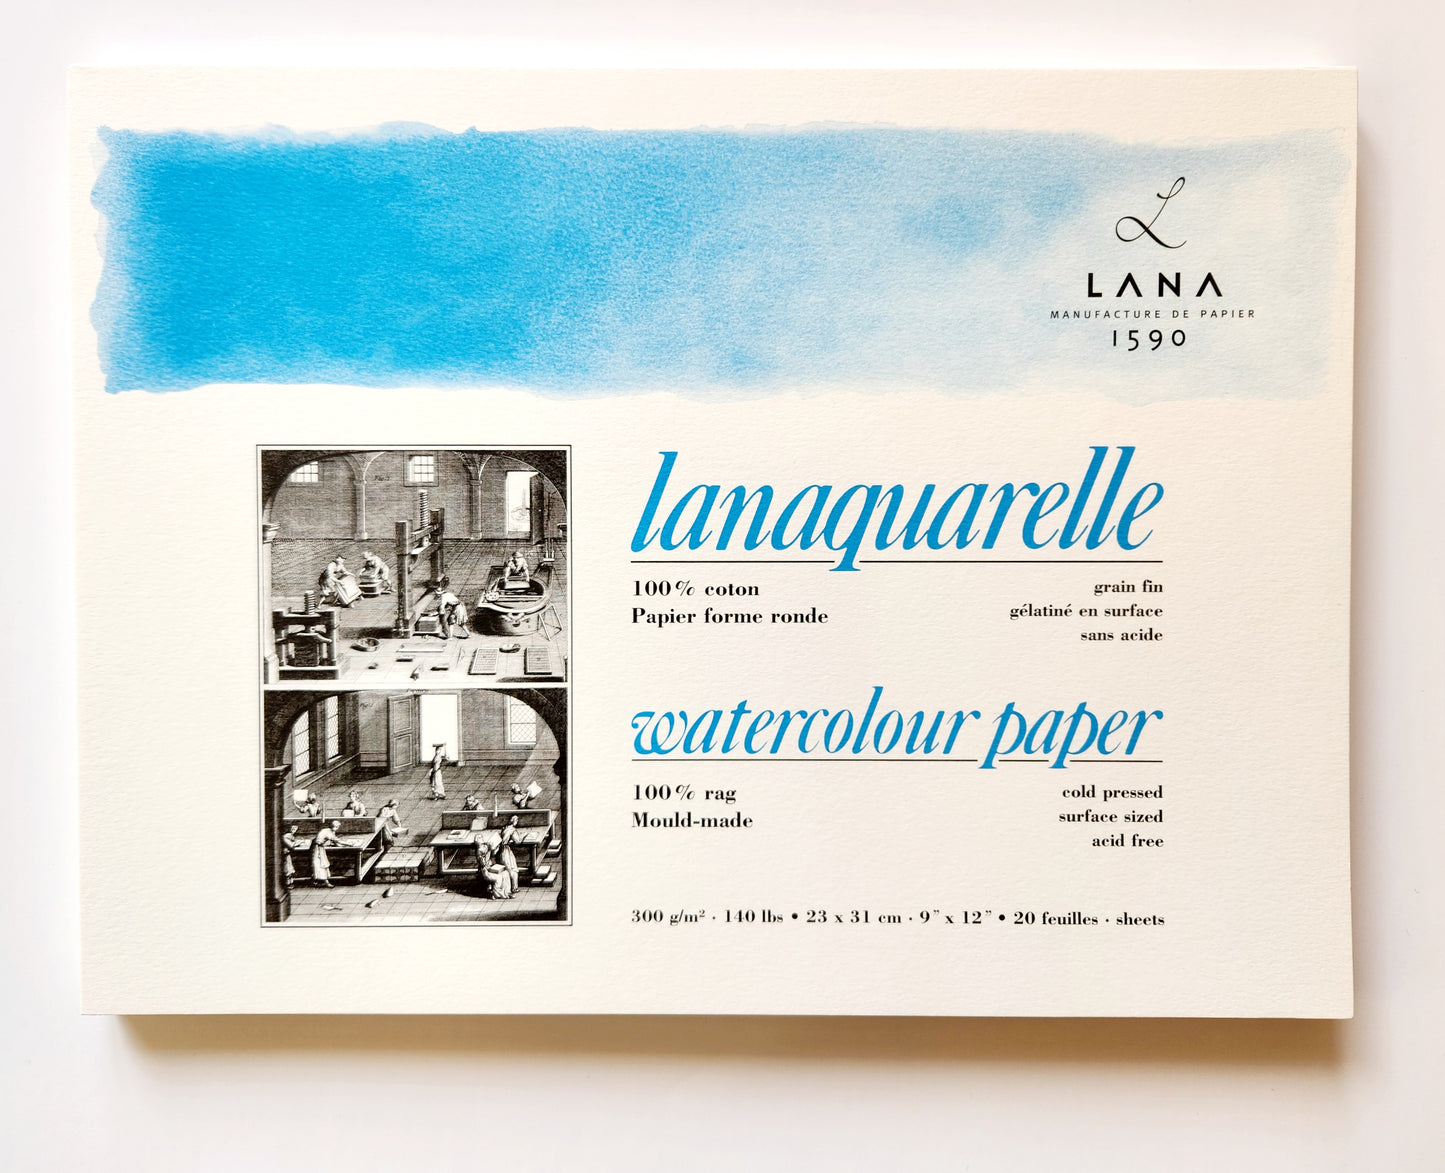 Lanaquarelle Aquarelle Pad 23x31 cm 300g Cold Pressed  Best quality cotton aquarelle paper. 100% cotton. Size 23x31cm, 300g/m2, 20 sheets glued on all 4 sides. Semi-rough paper. 